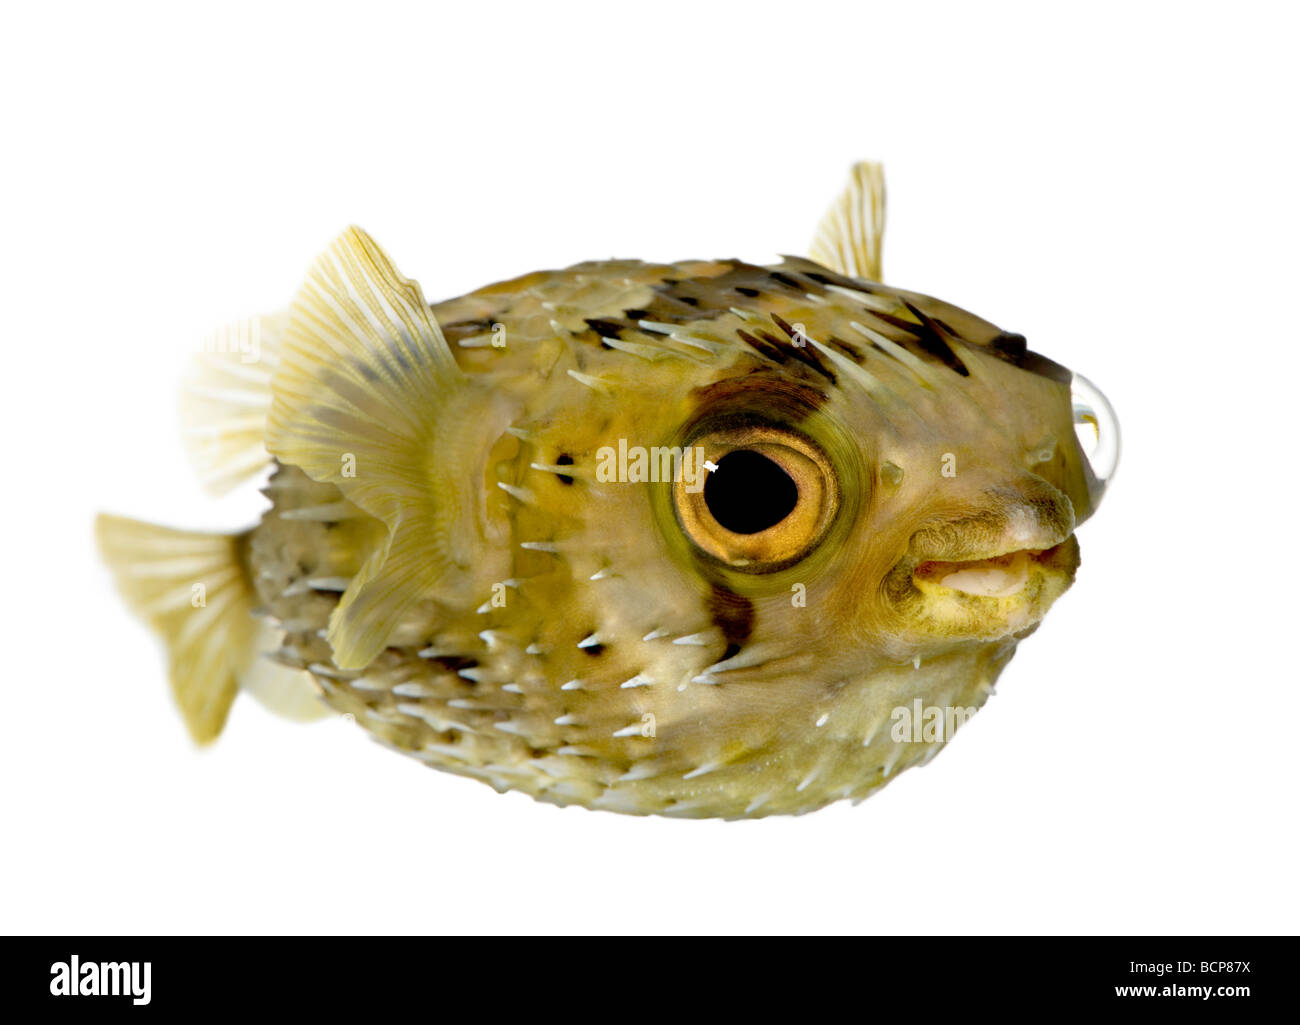 Allungate la spina dorsale porcupinefish, noto anche come balloonfish spinoso pesce, Diodon holocanthus, di fronte a uno sfondo bianco Foto Stock